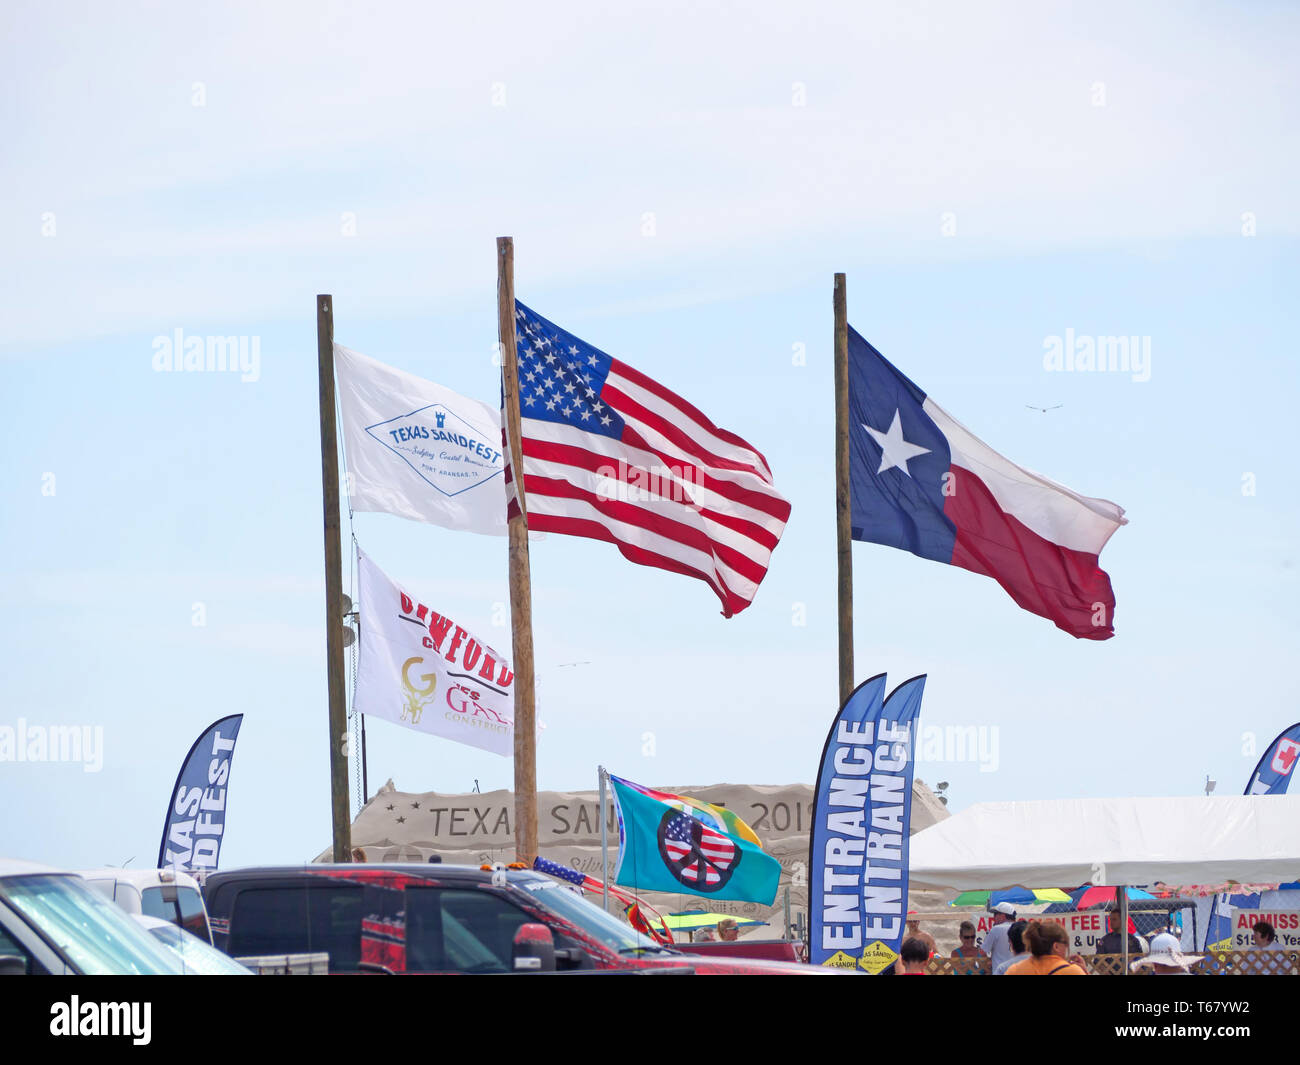 Texas Sandfest, United States und Texas State flags Fly gegen einen hellblauen Himmel am Eingang des 2019 Texas Sandfest in Port Aransas, Texas USA. Stockfoto